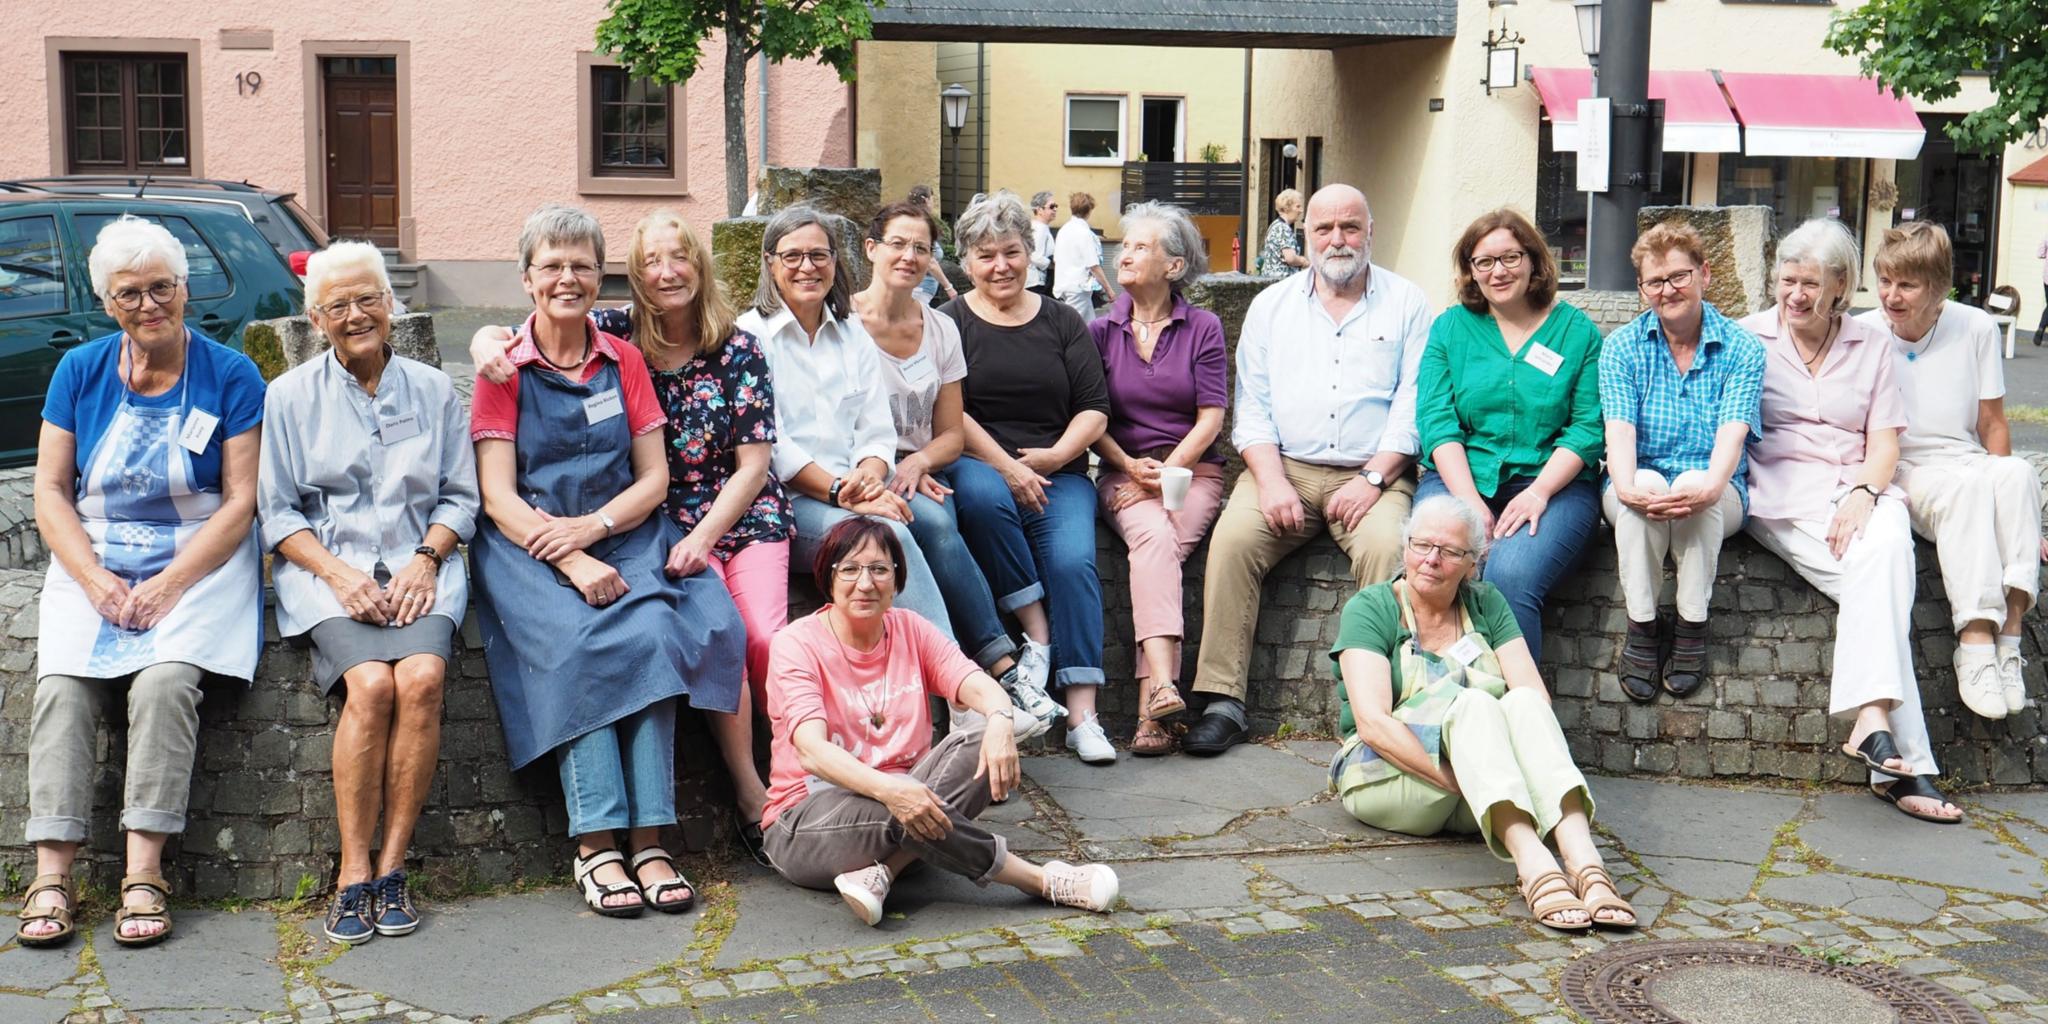 Die 14 Frauen gemeinsam mit Uwe Appold gegen Ende des zweiten Workshop-Tages in Hillesheim.